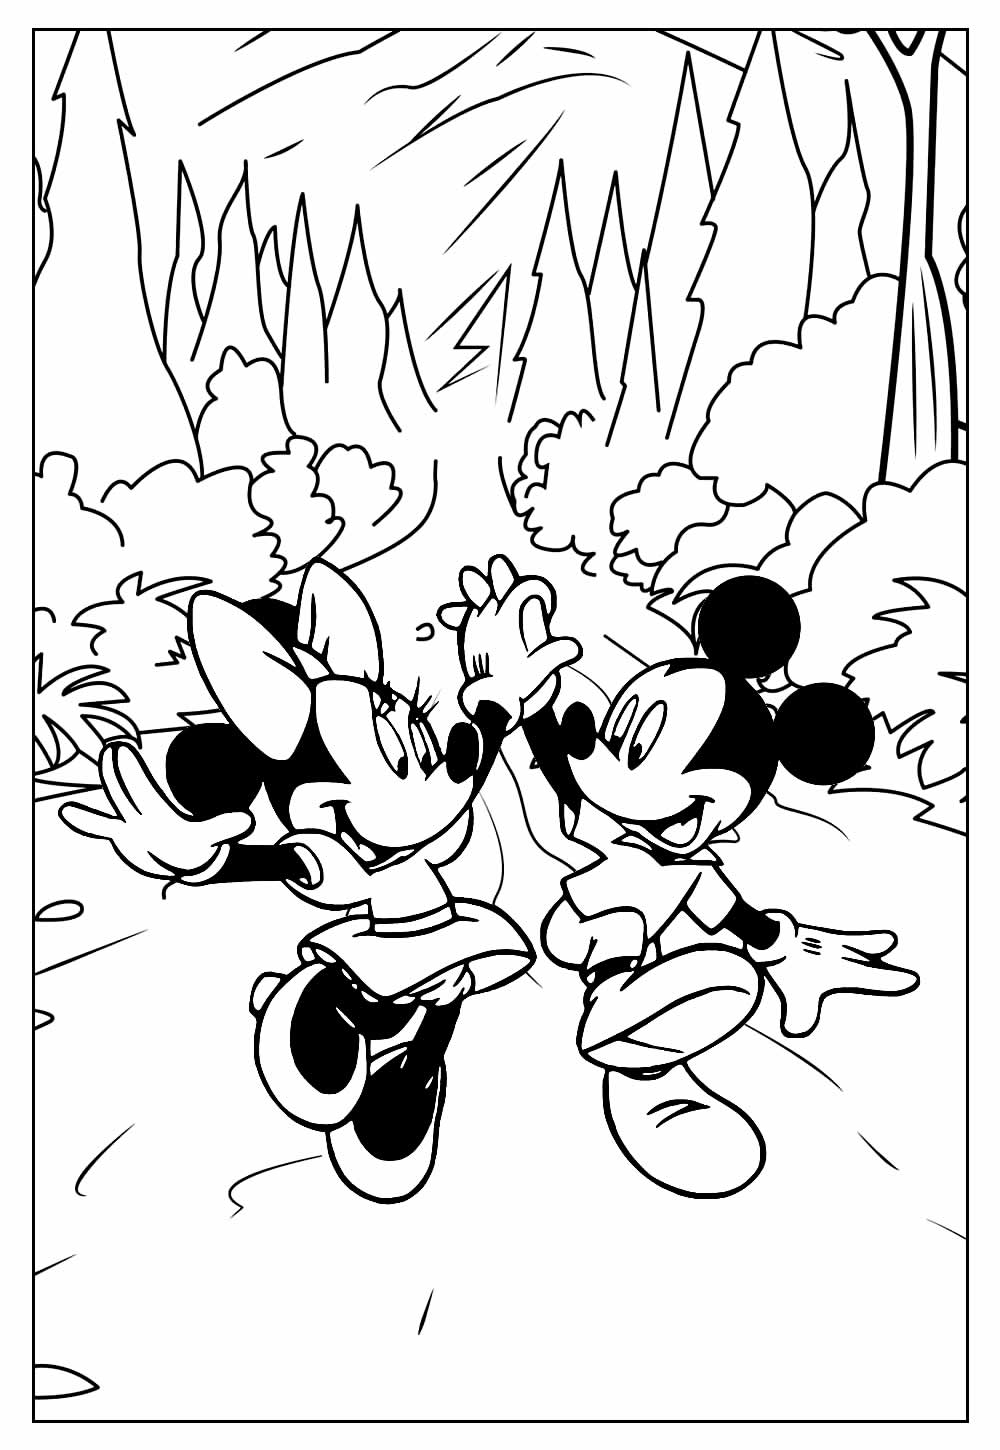 Mickey e Minnie para colorir